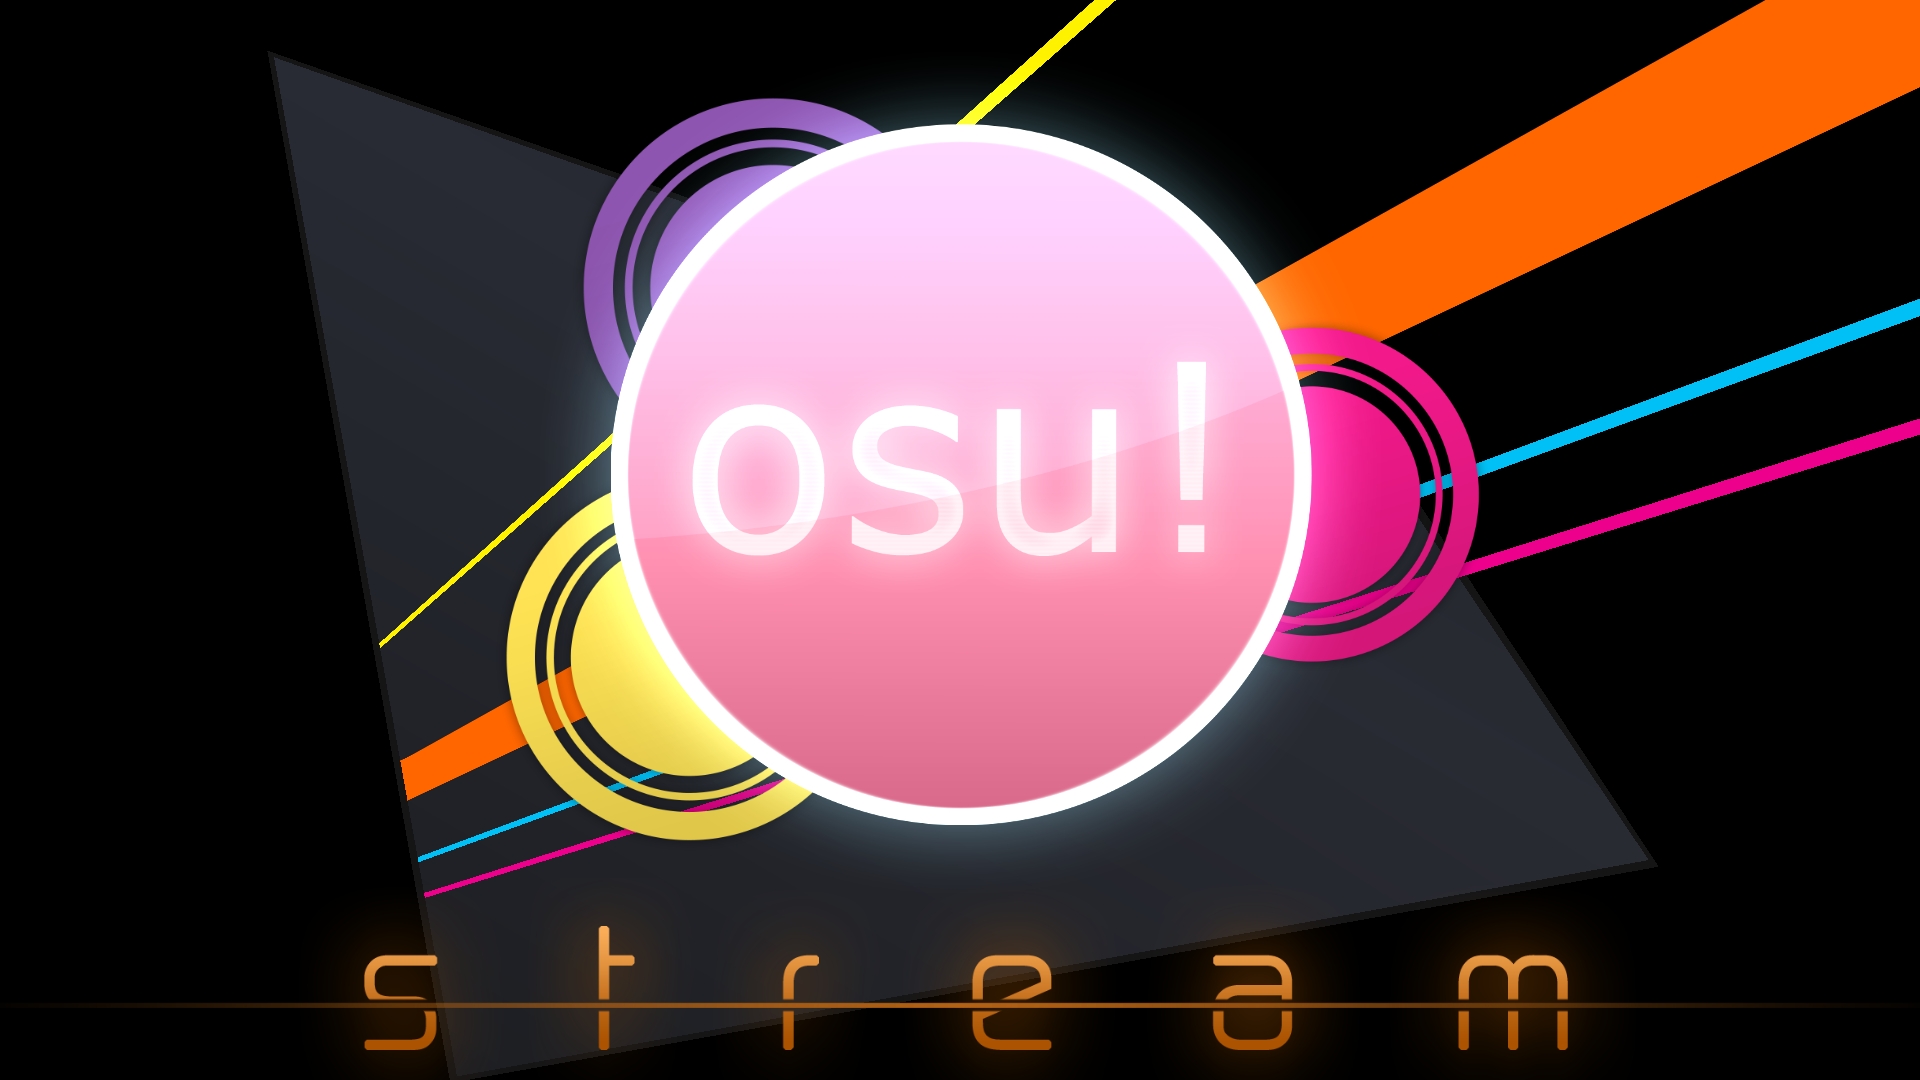 Osu! - First Time Playing [Music/Rhythm Game] 